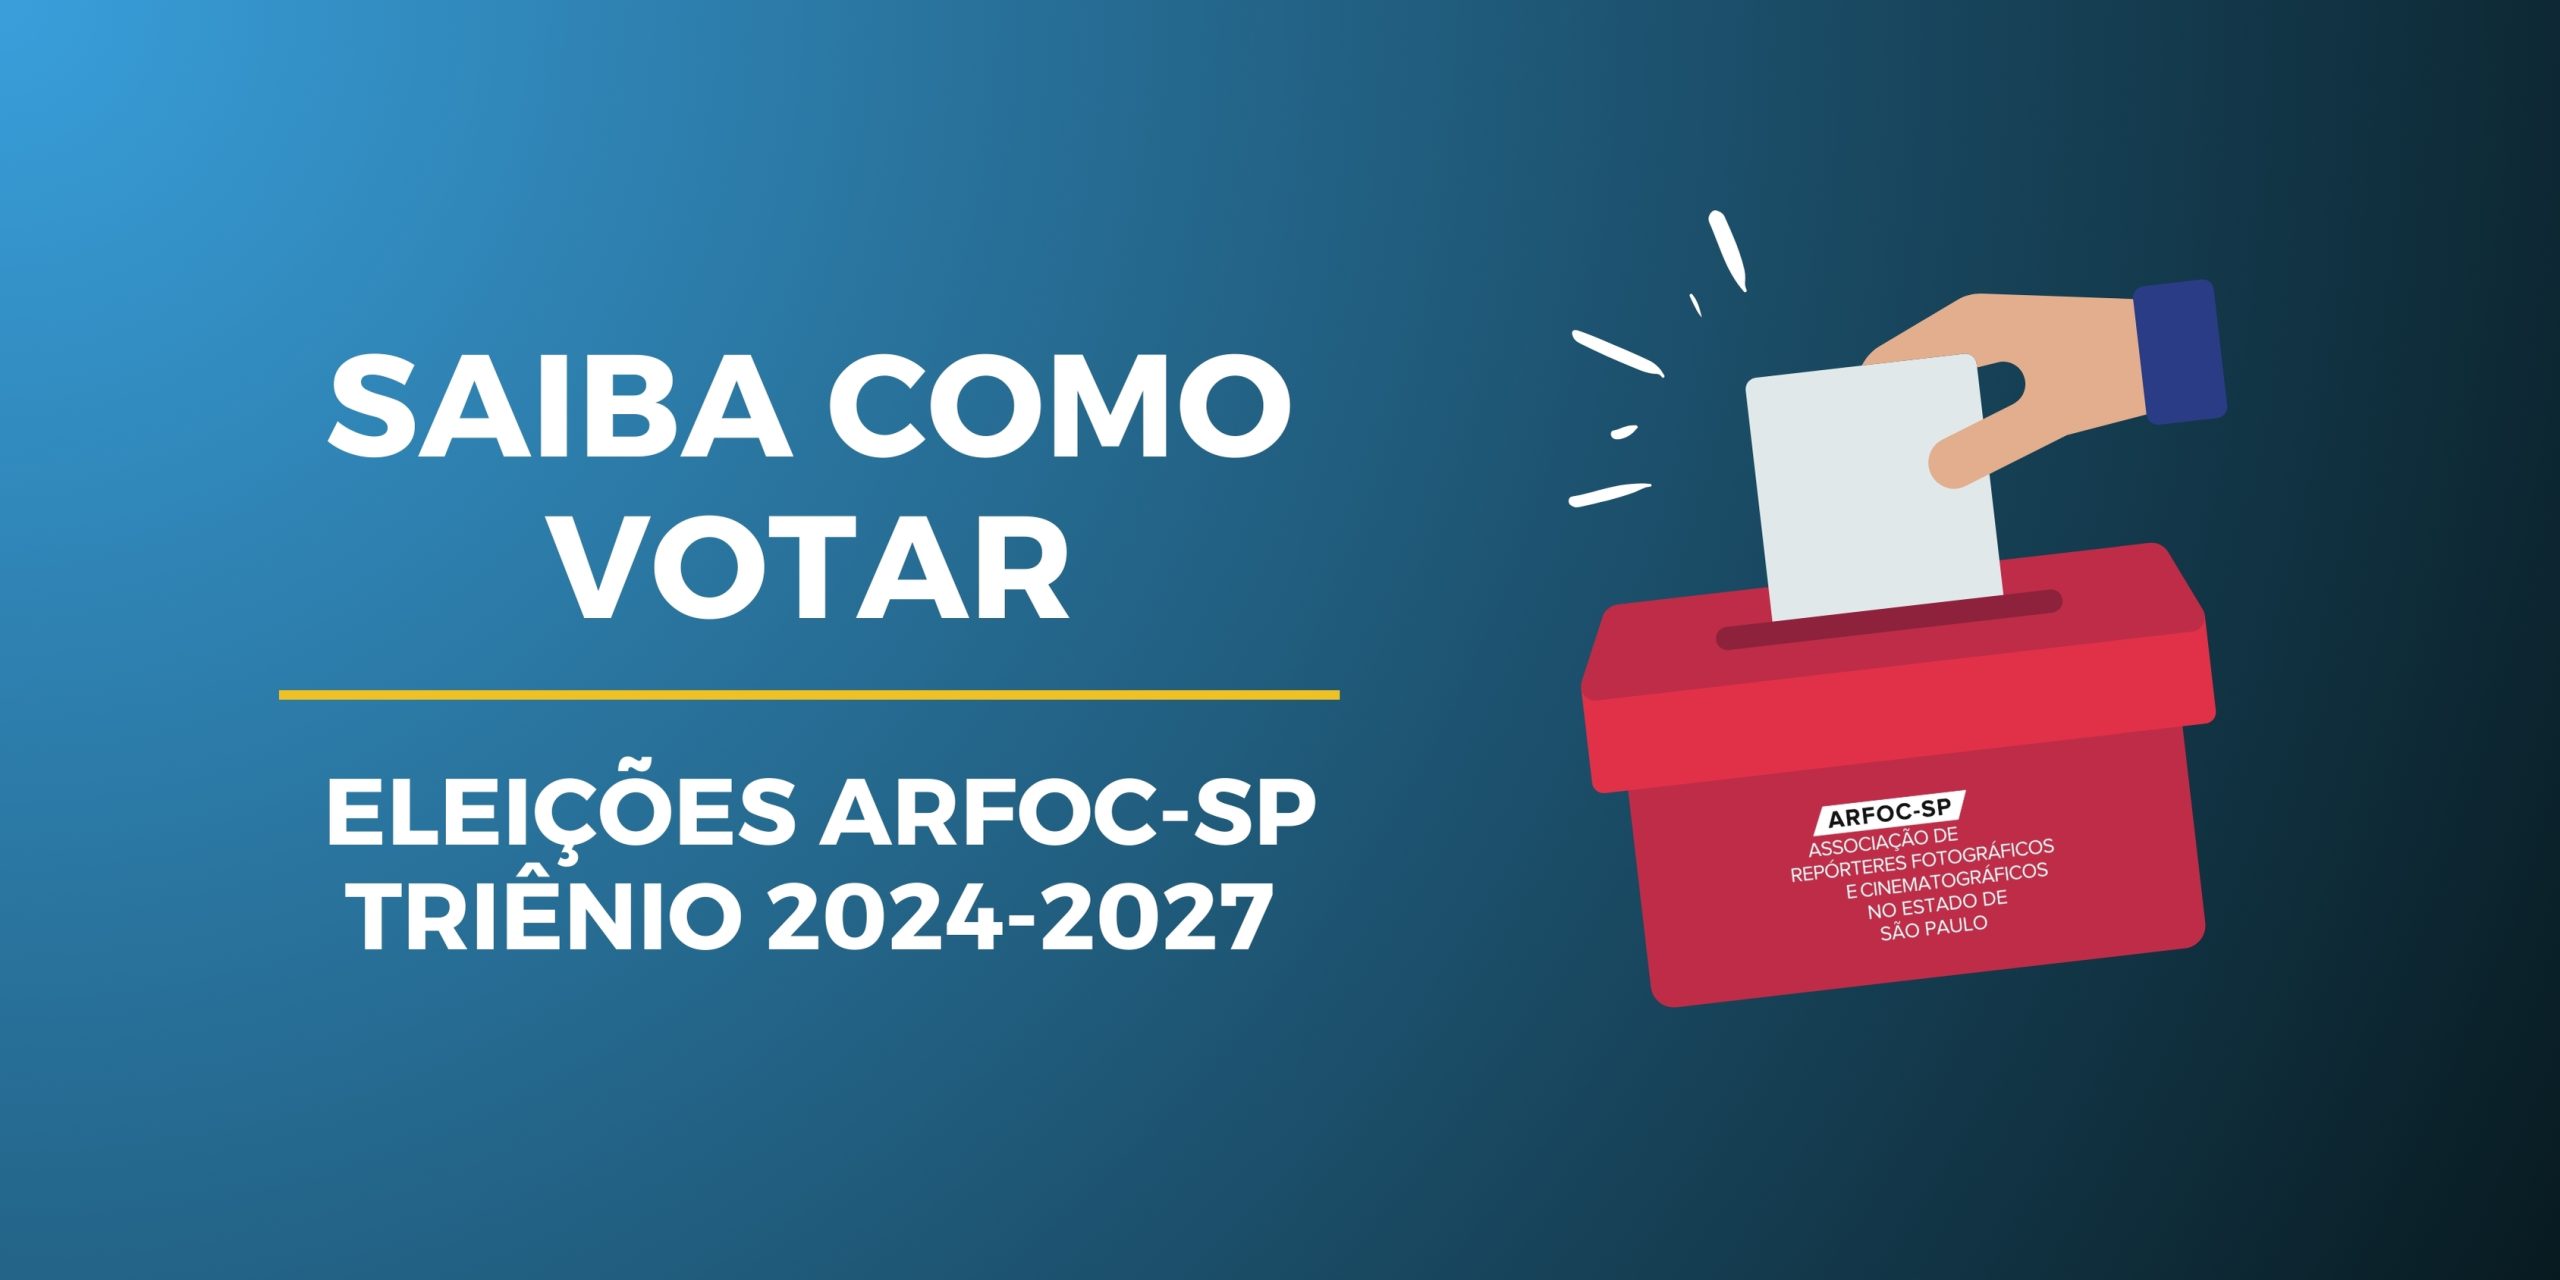 Nesta segunda-feira começa a eleição para a escolha da nova diretoria da ARFOC-SP. Participe!